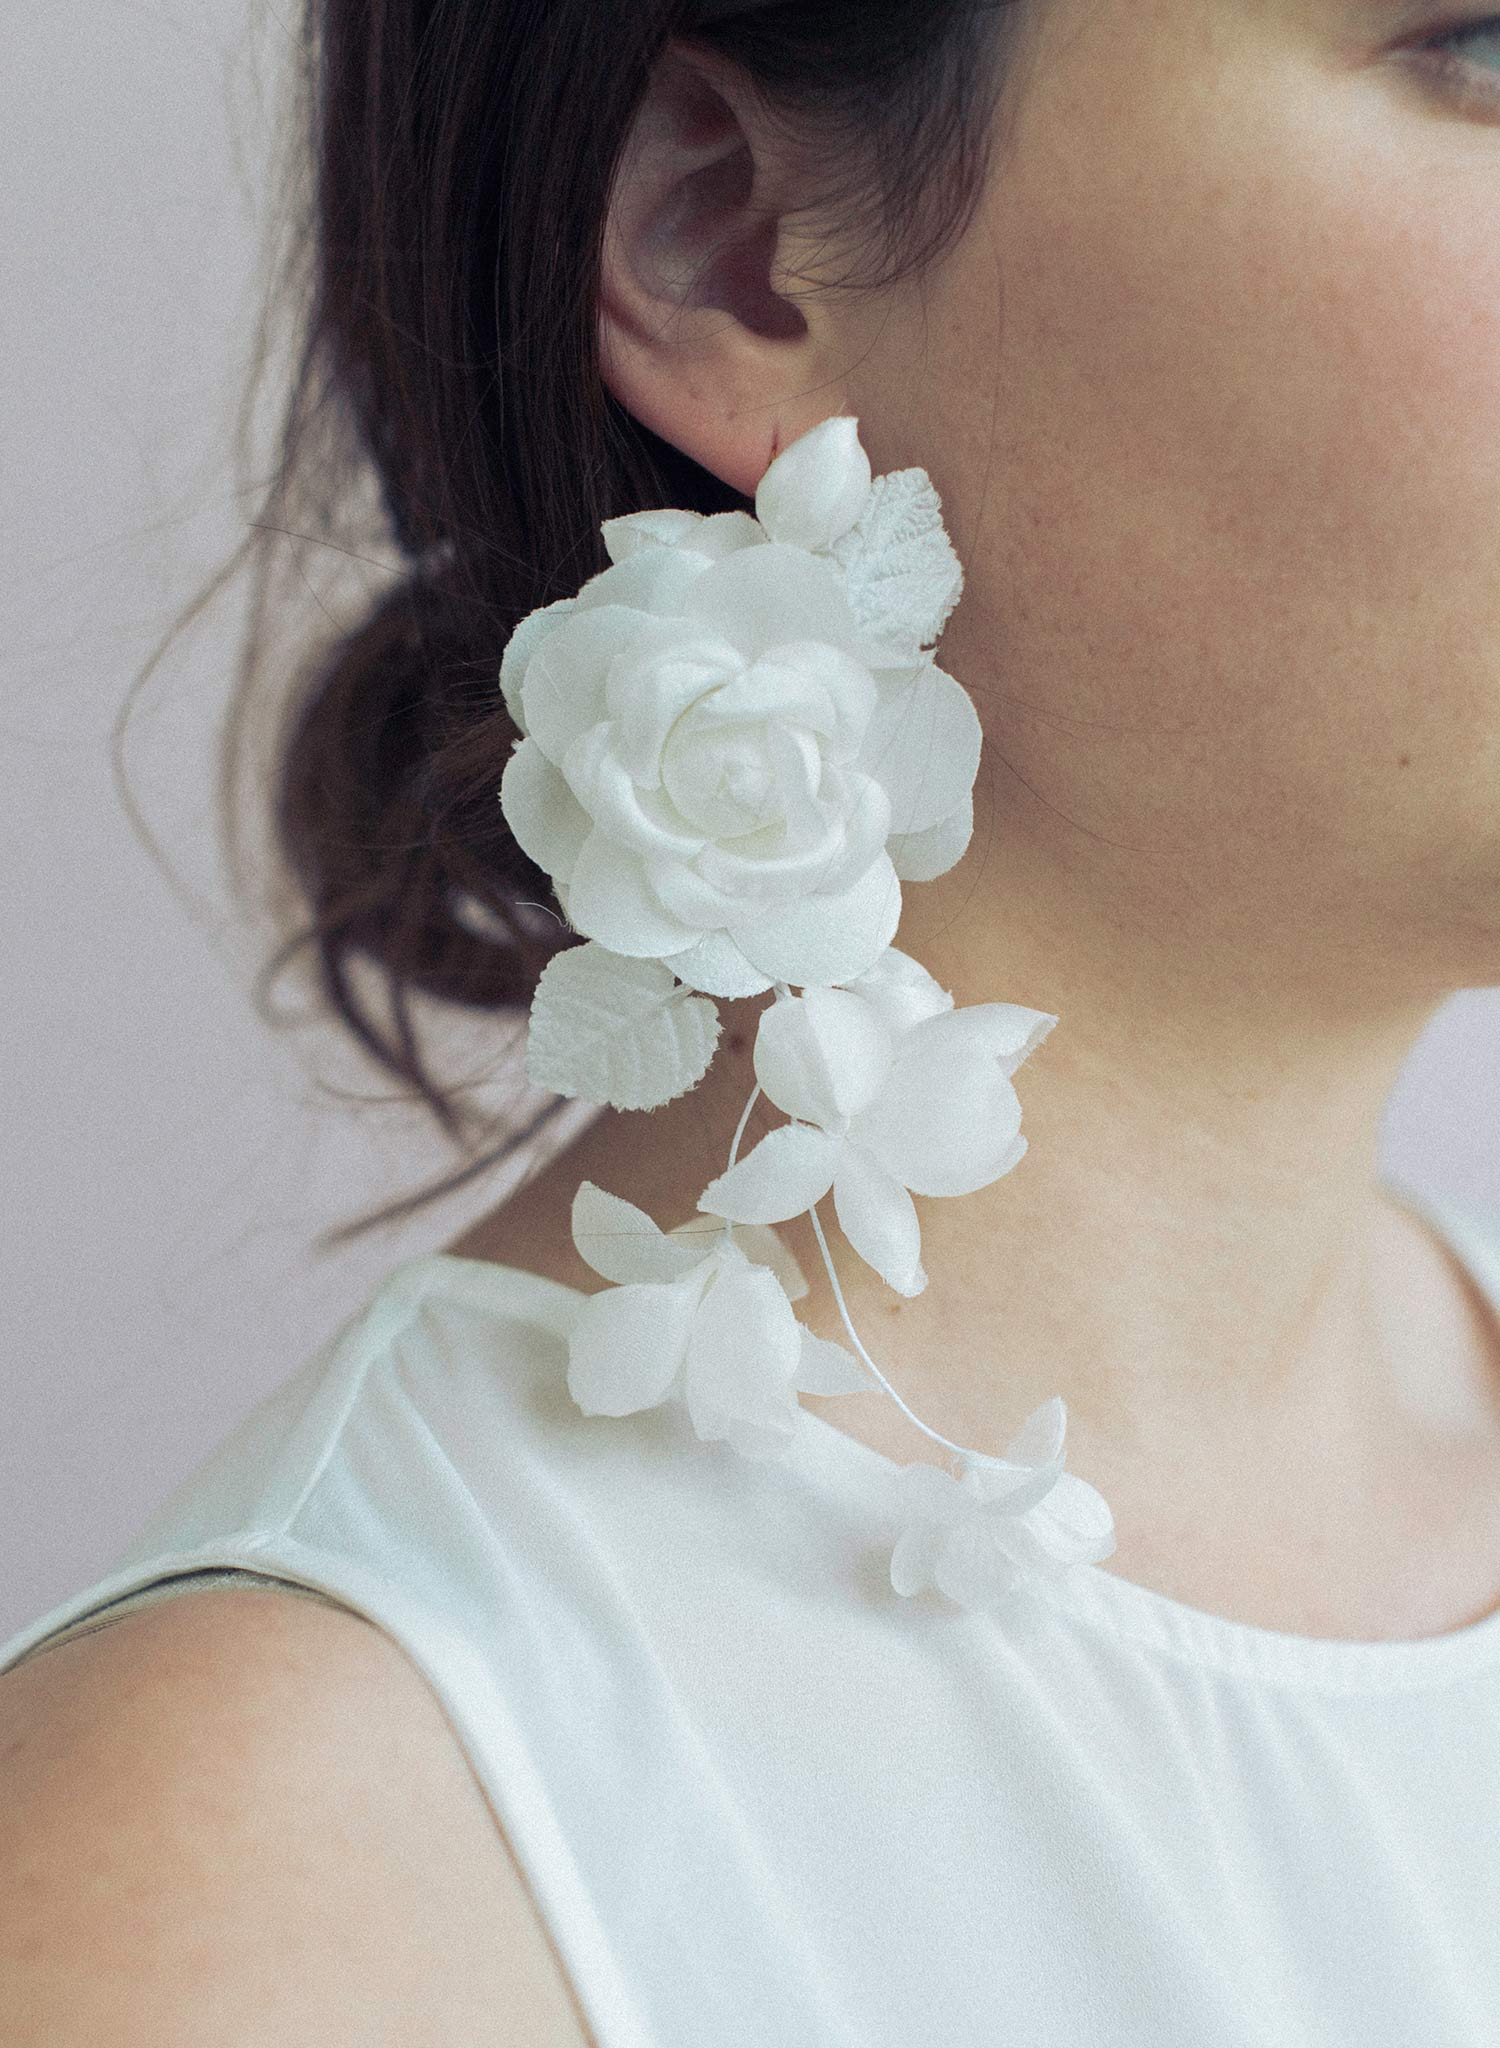 Silk flower cascading earrings - Style #948